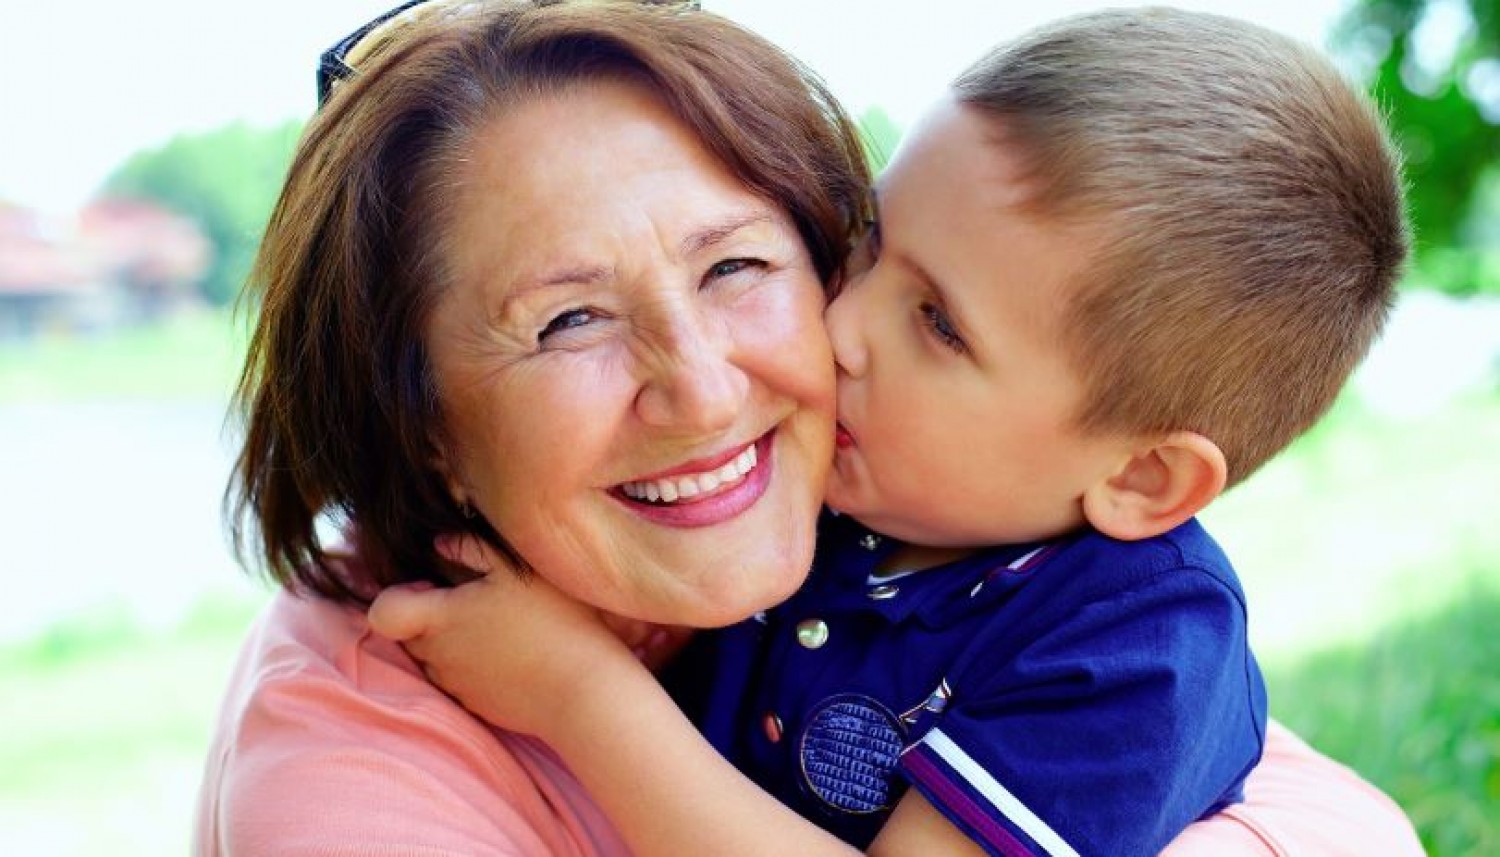 Kutatások szerint a gyermekek az anyai nagymamájuk génjeit öröklik legerőteljesebben